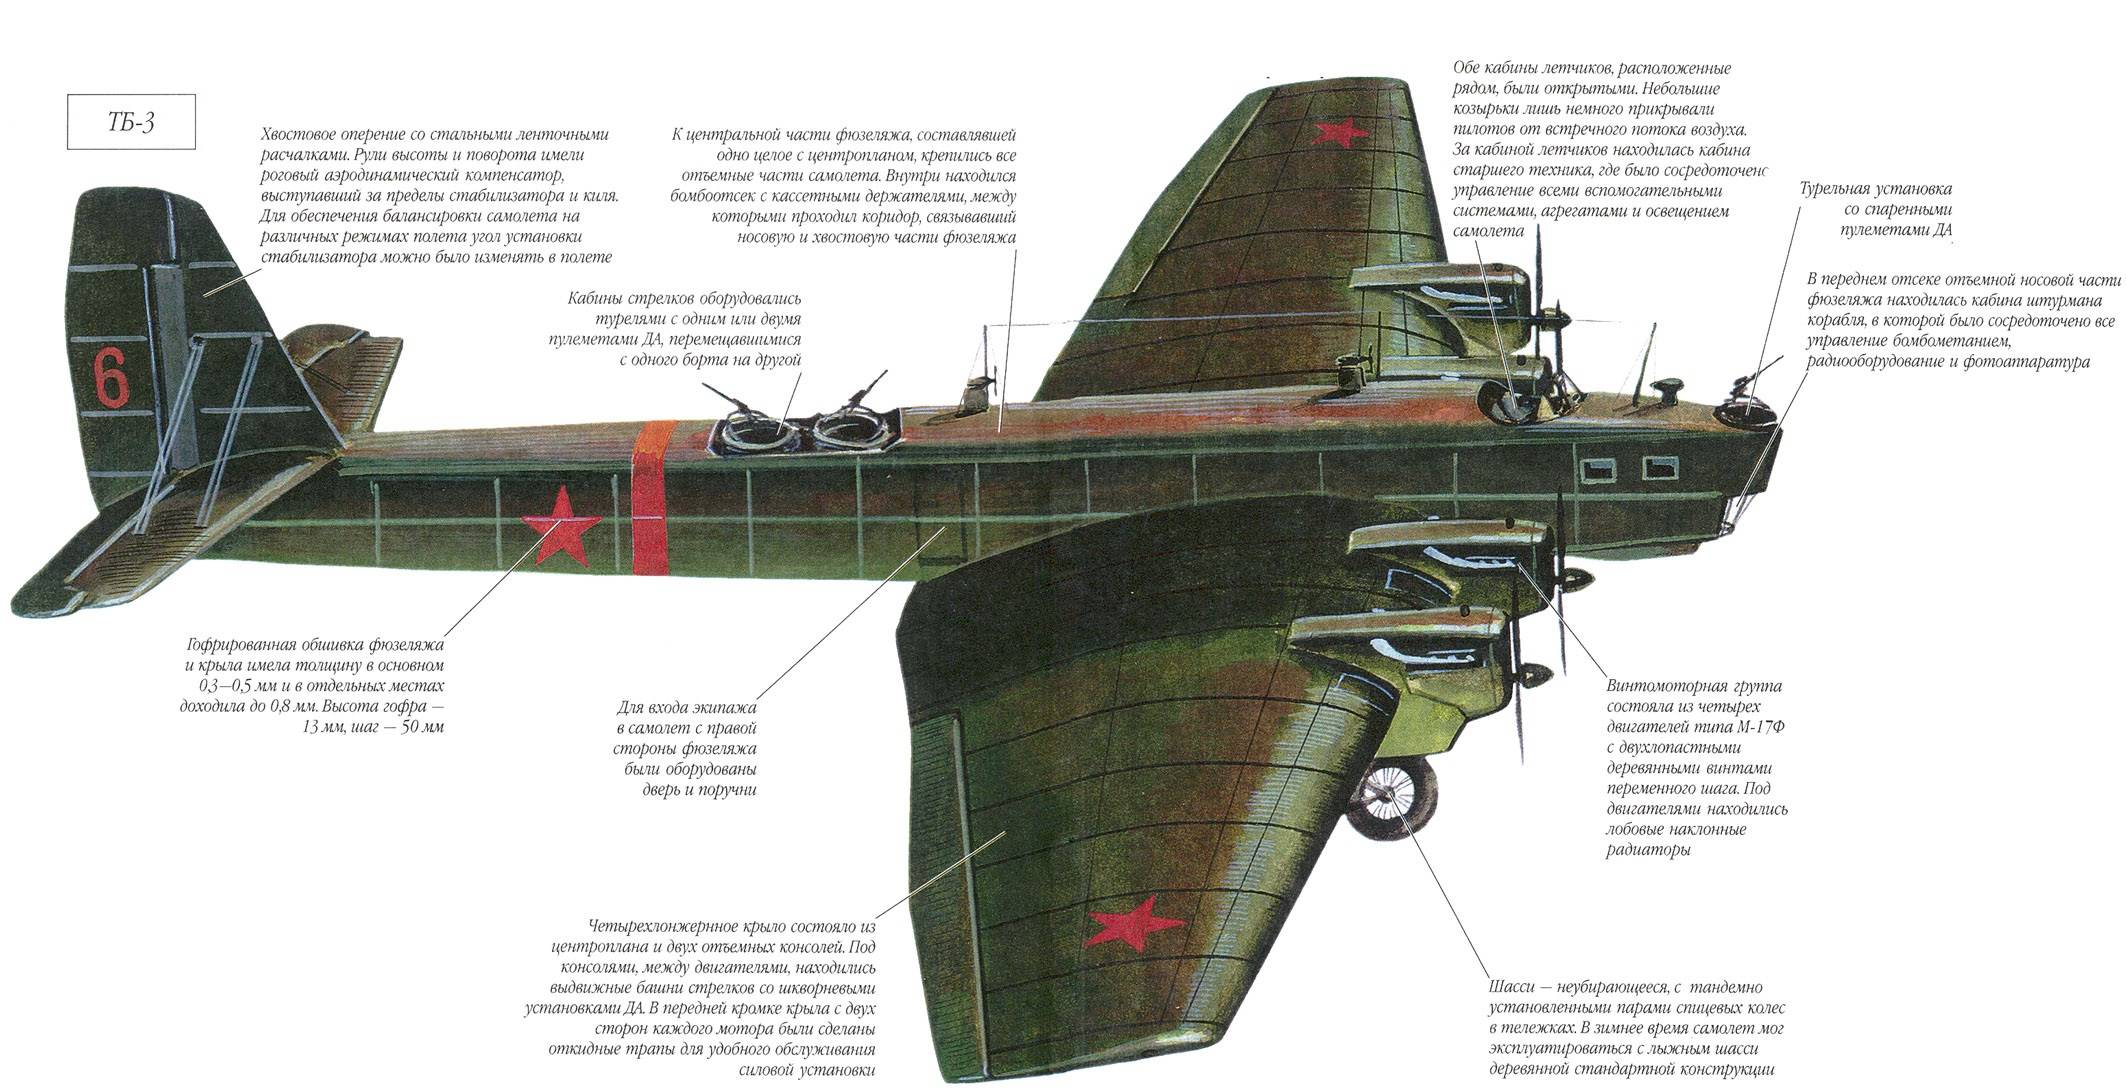 Самолёт ту-4: история создания, дальний бомбардировщик, технические характеристики (ттх), конструкция